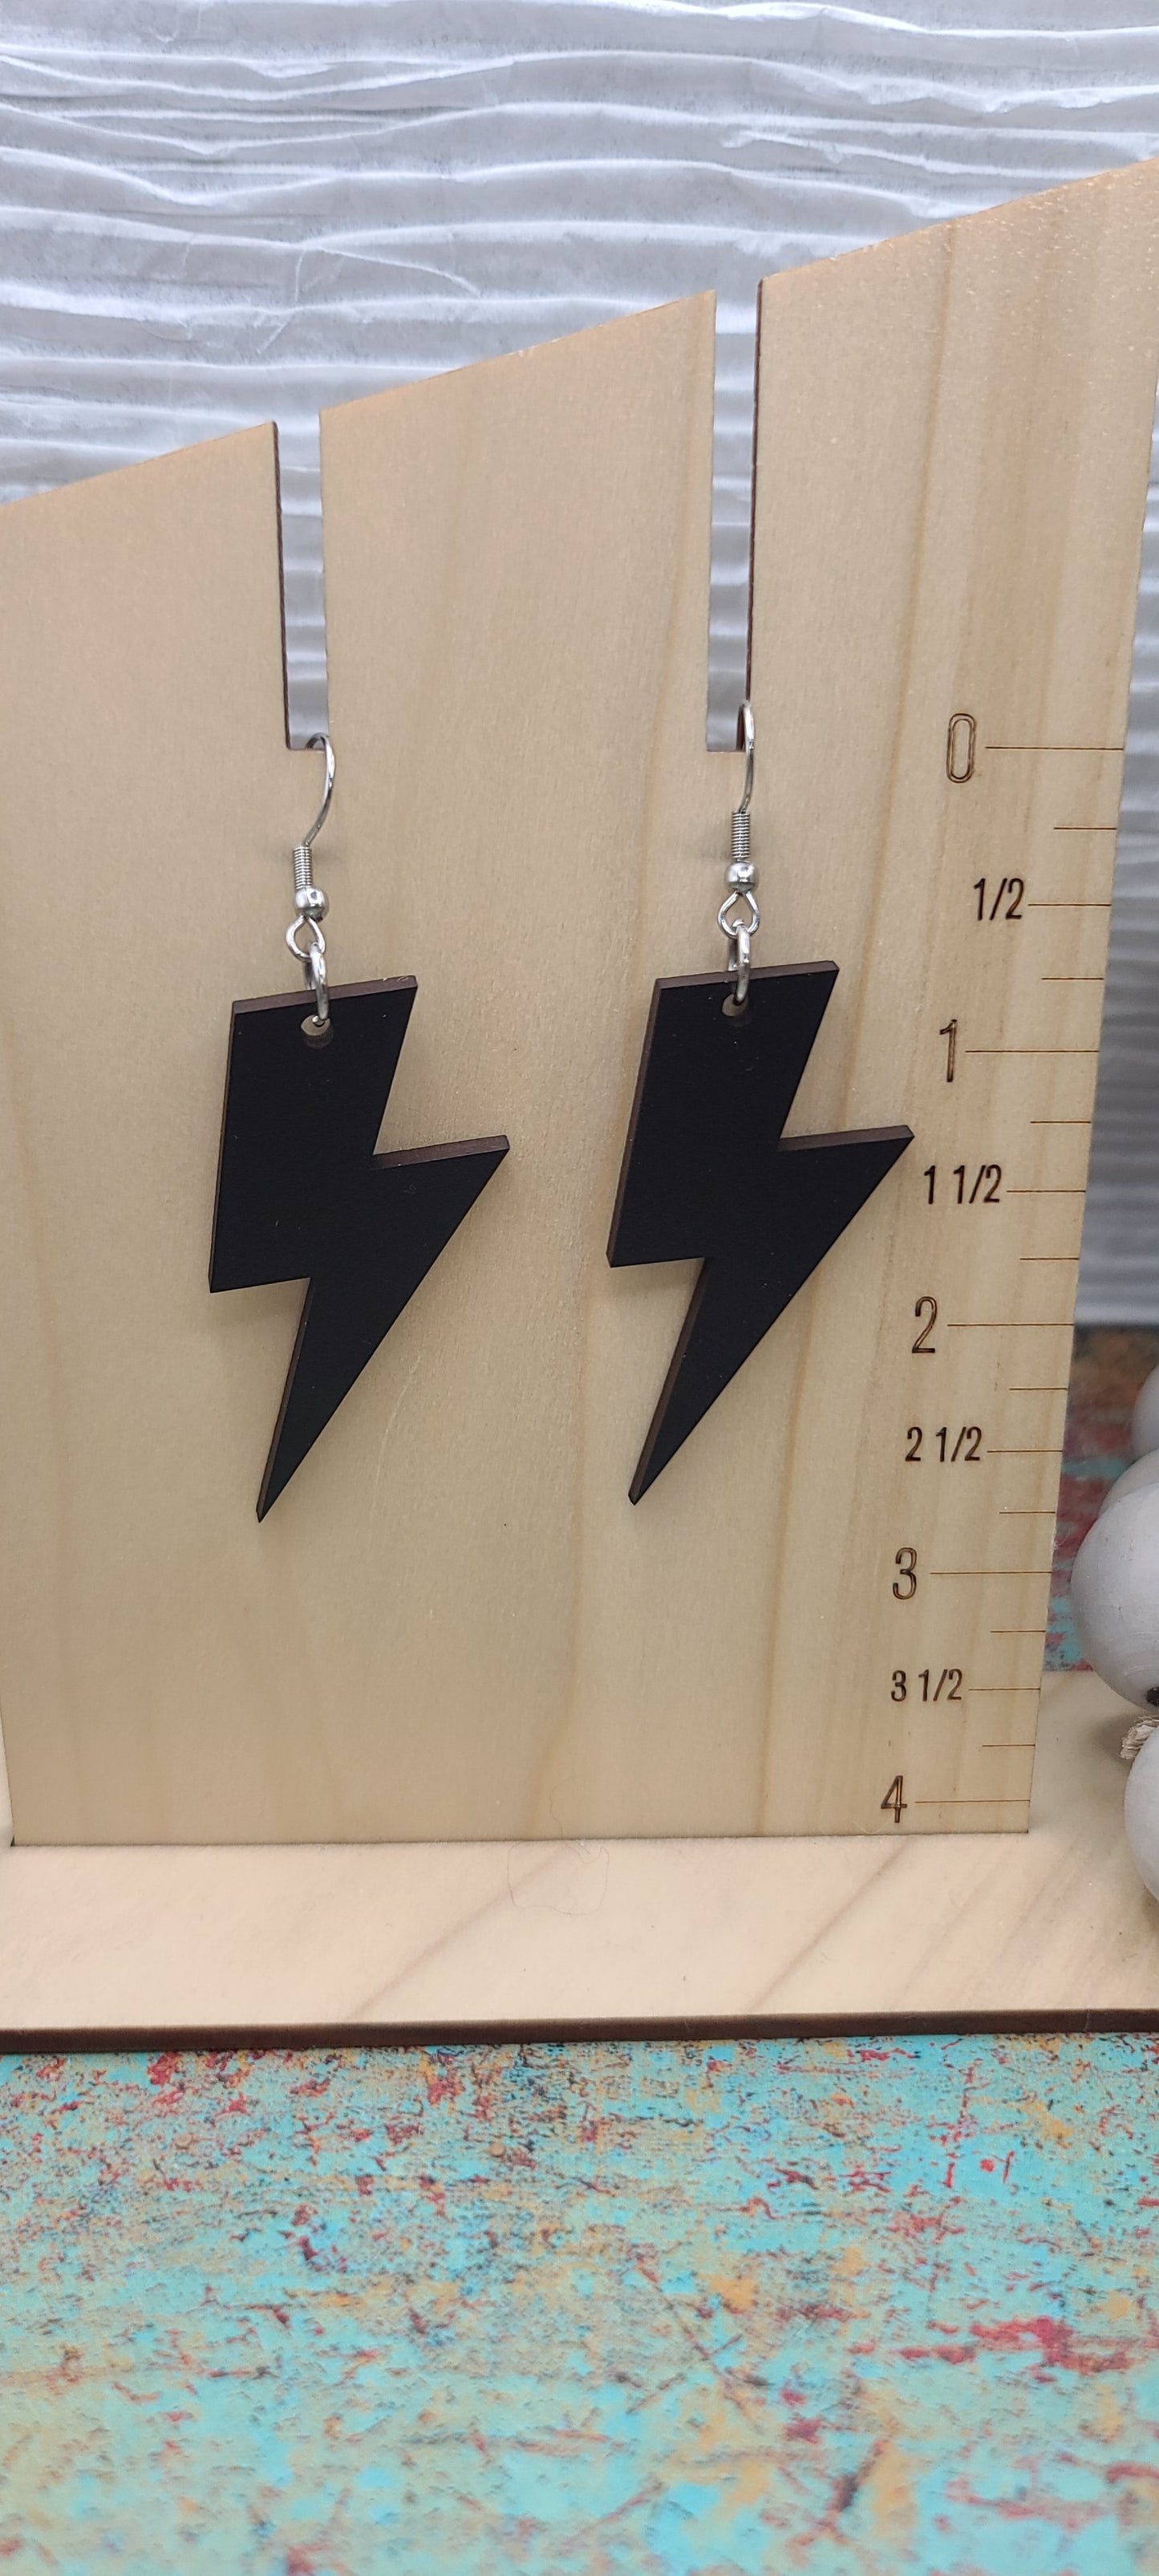 Black Lightning Bolt Earrings